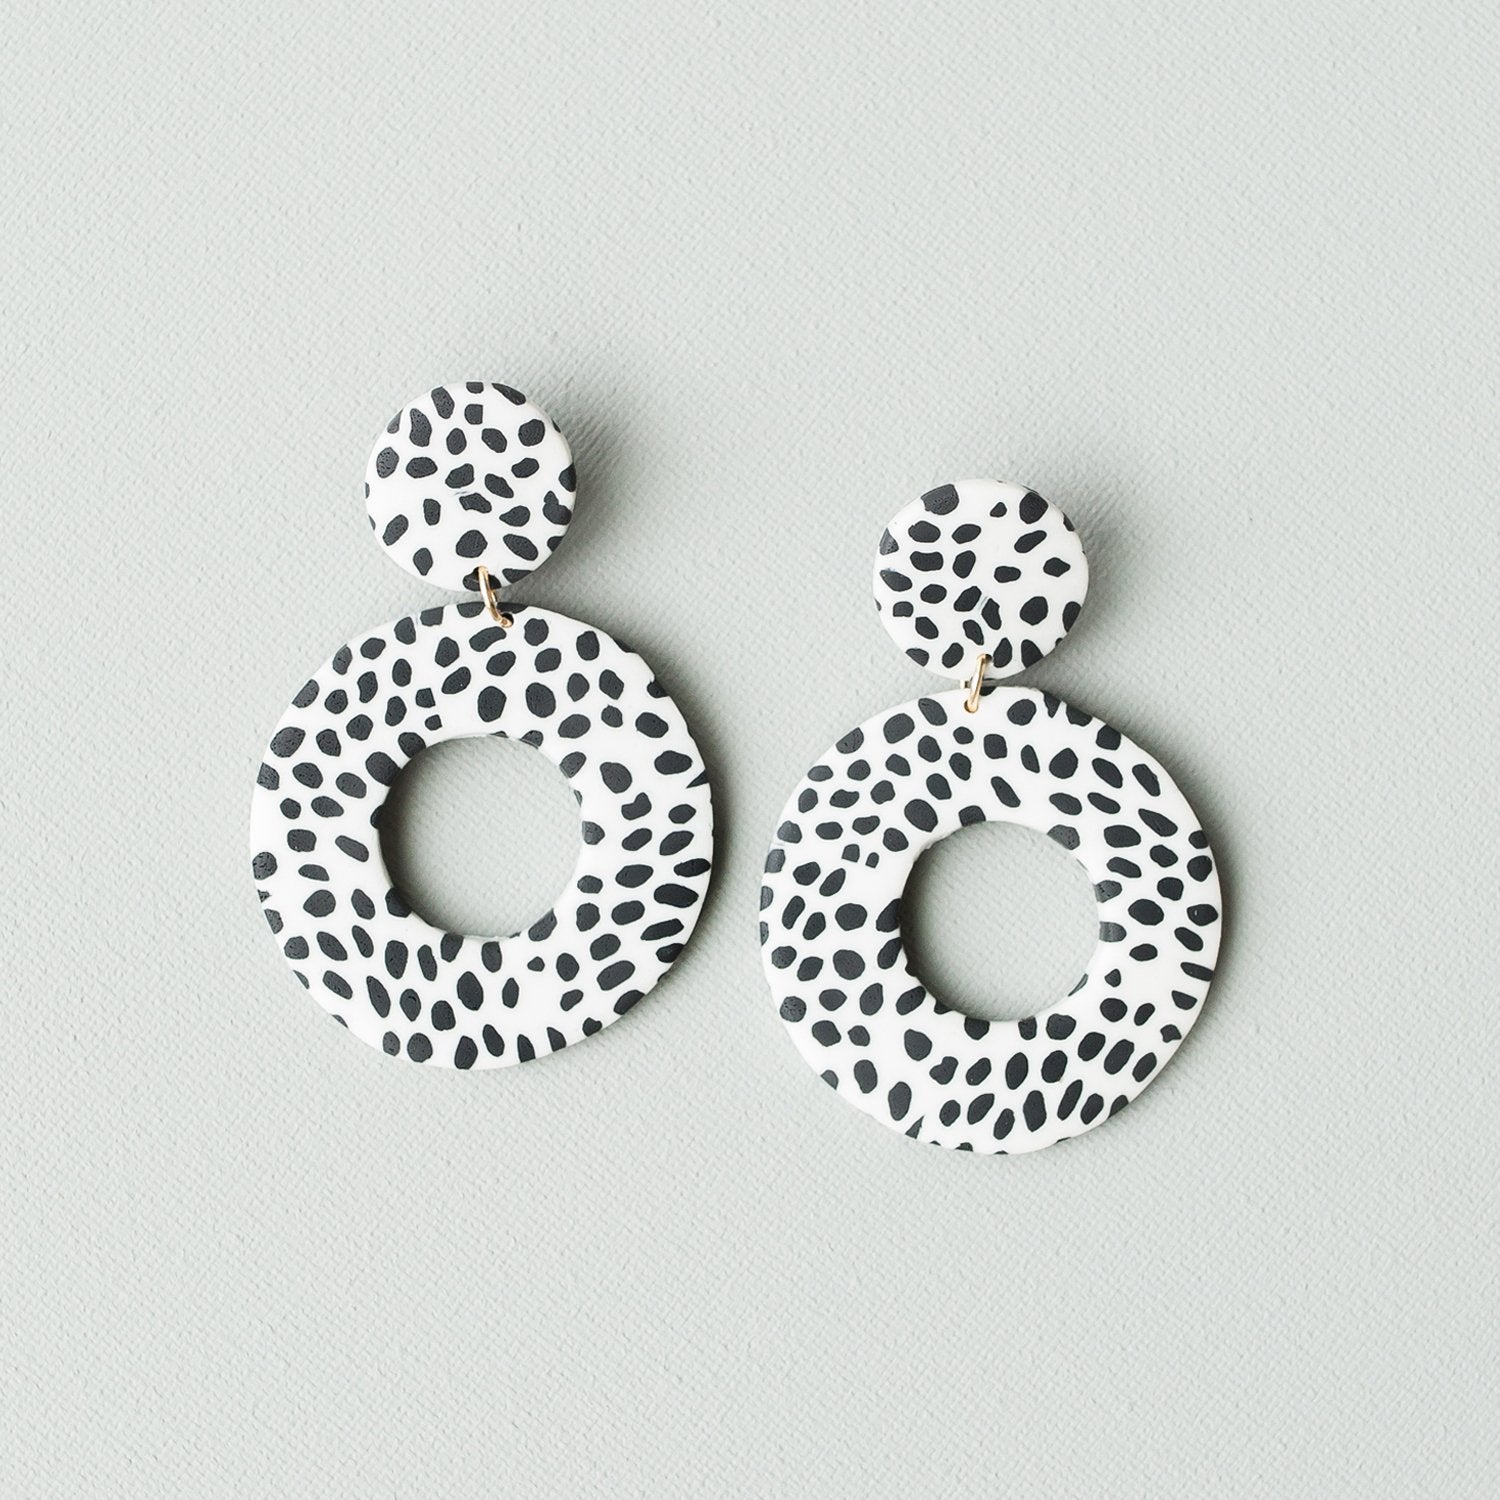 Marble Dalmatian earrings